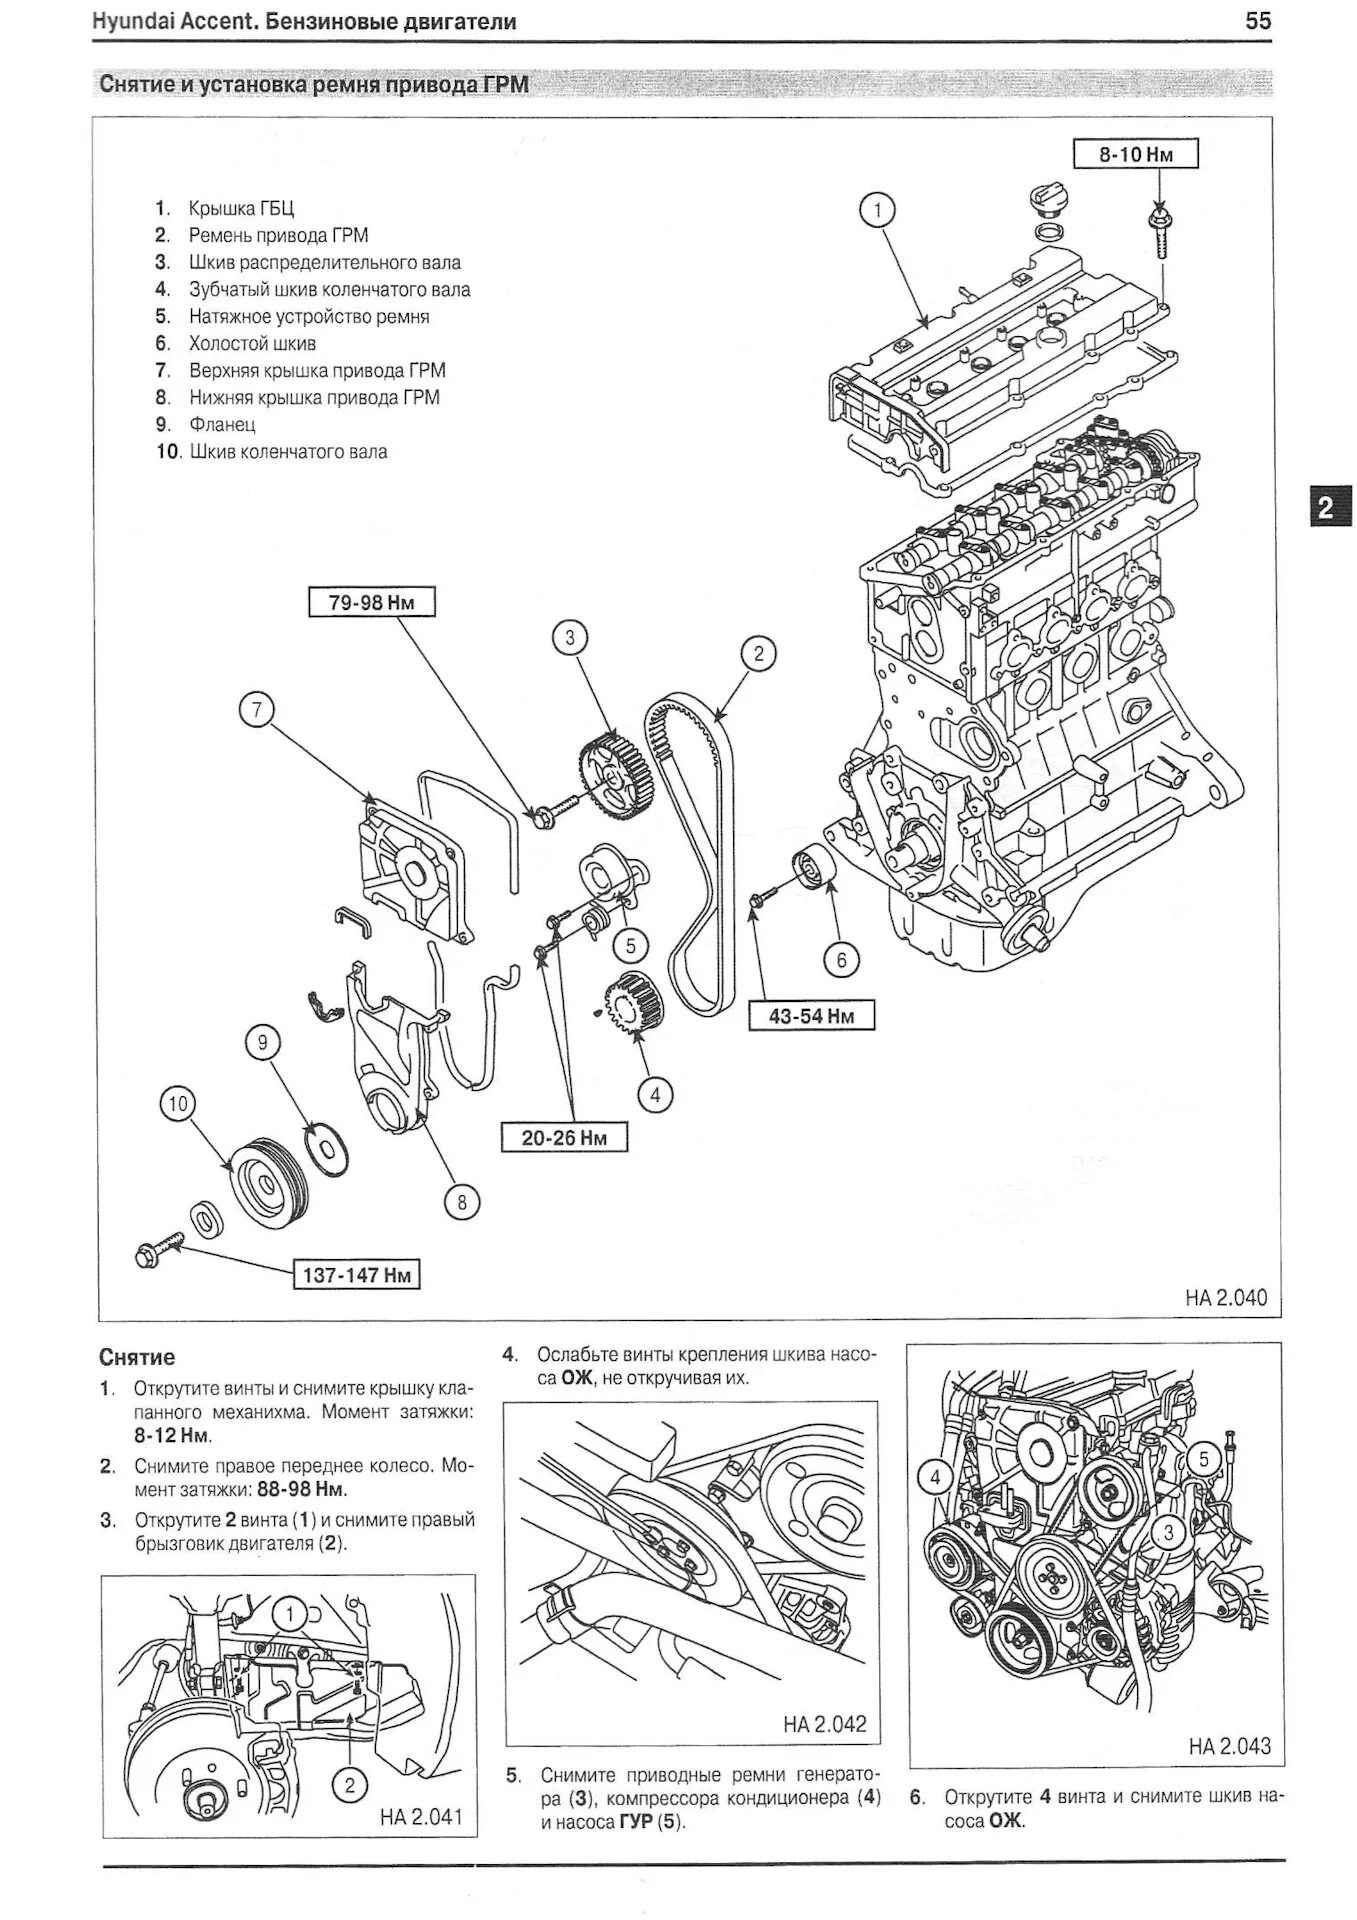 Ремонт двигателя акцент. Двигатель Hyundai Getz 1.4 схема. Схема двигателя Хендай Соляриса 1.6. Двигатель Хендай акцент ТАГАЗ 1.5 16 клапанов схема. Схема мотора Хендай акцент.